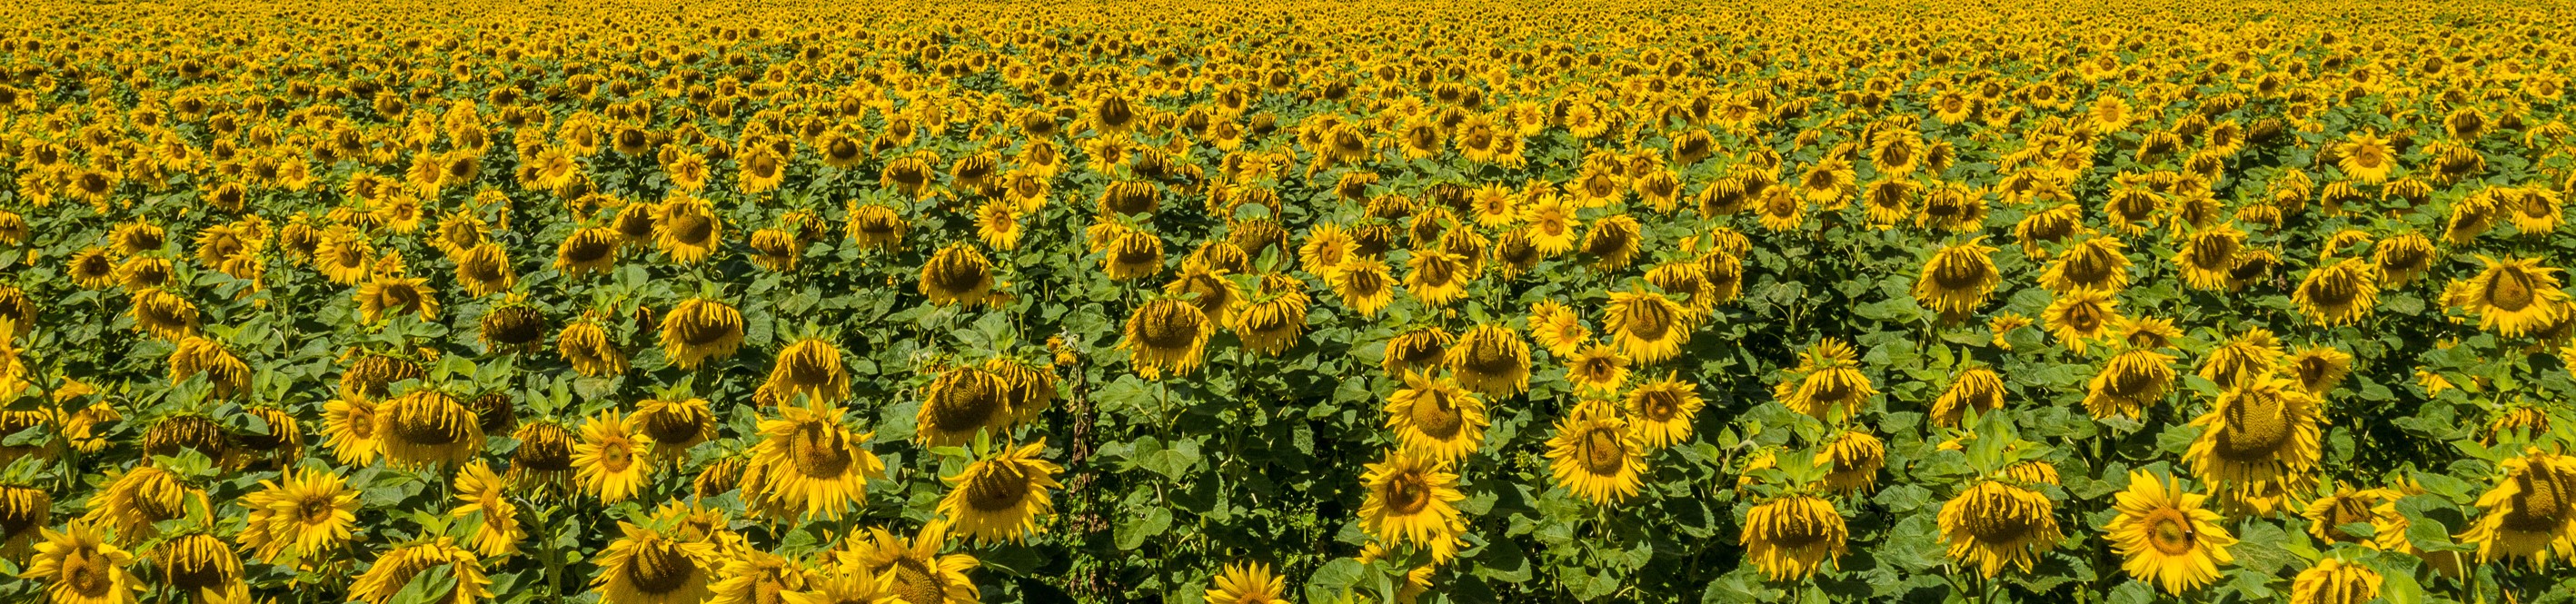 kws0720_sunflower_field_0086_zugeschnitten.jpg